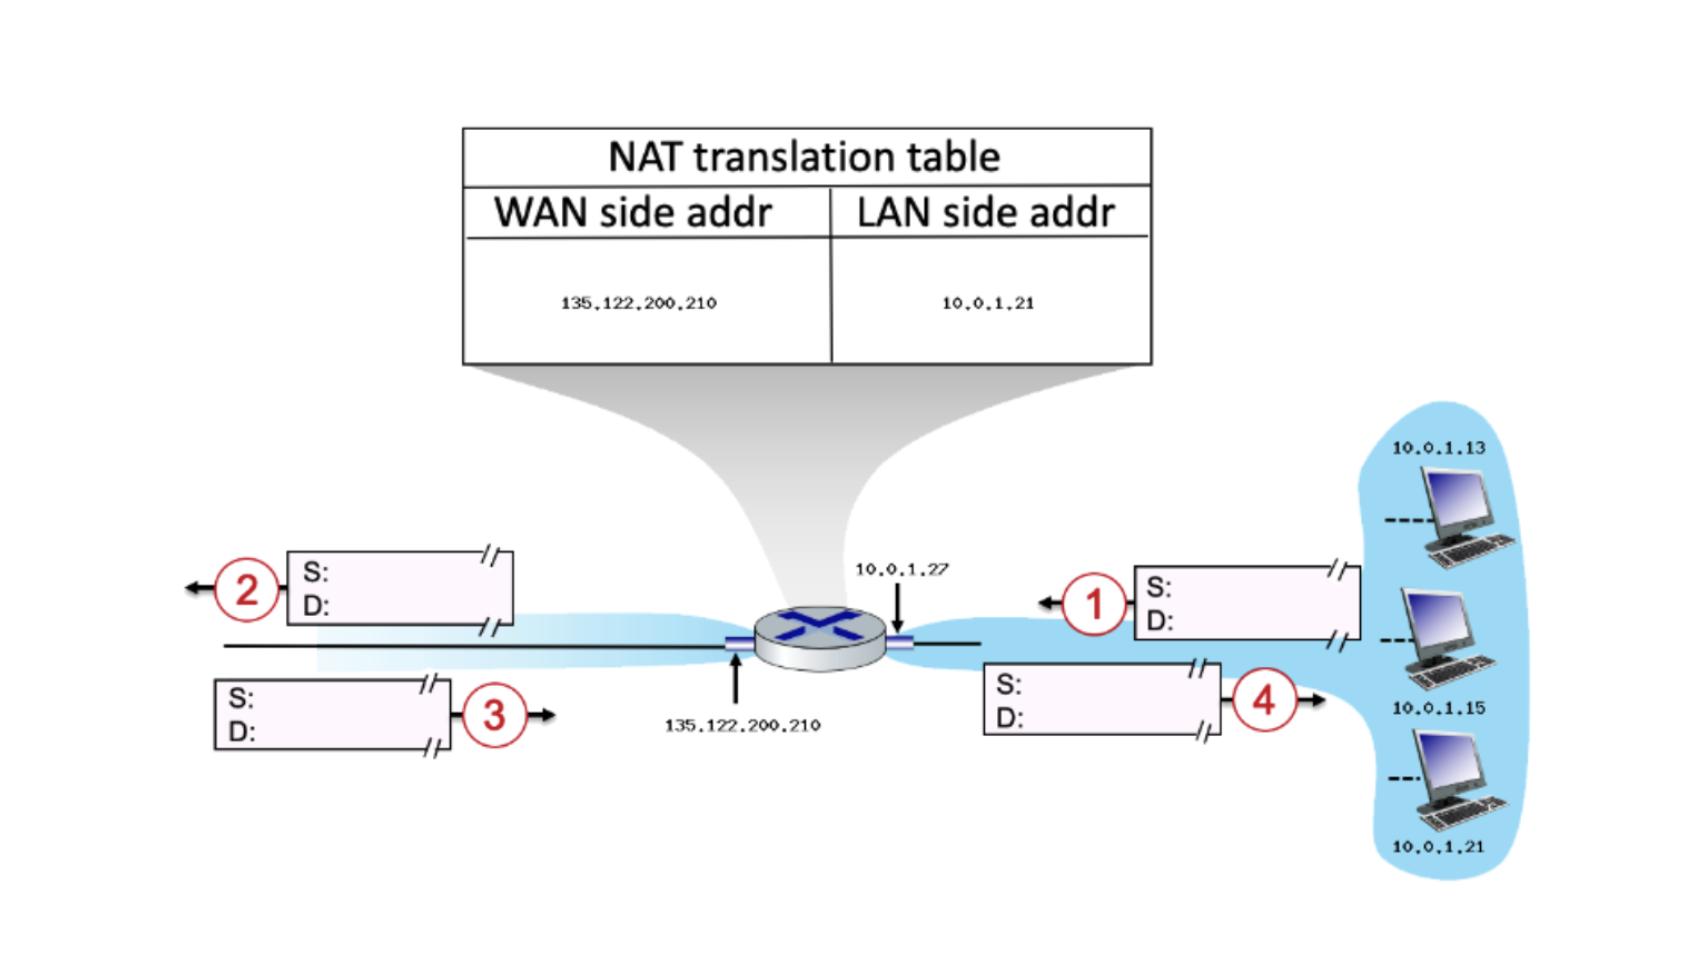 S: (2) D: S: D: NAT translation table WAN side addr LAN side addr 3 135,122,200,210 135.122.200.210 10.0.1.21